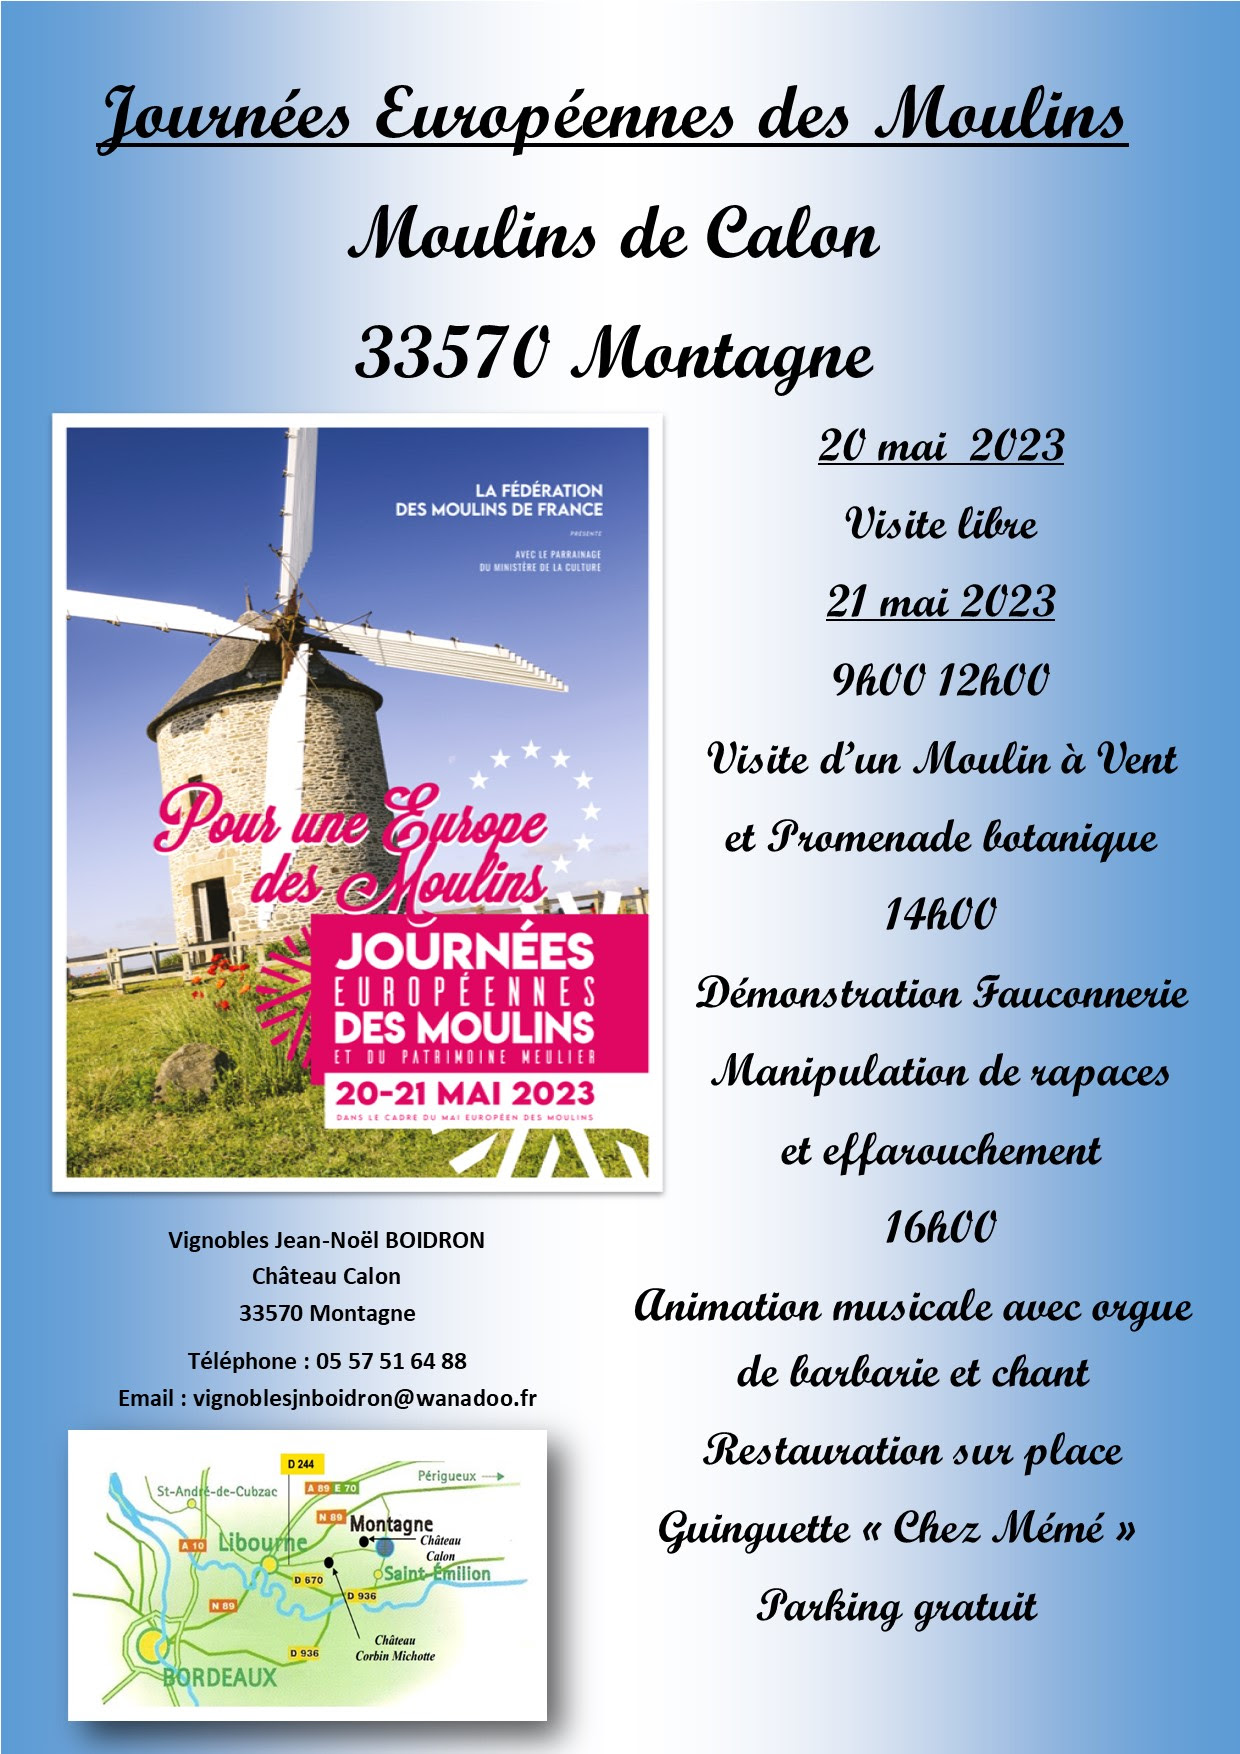 Journées Européennes des Moulins 20/21 mai 2023 au Château Calon - 33570 Montagne 2